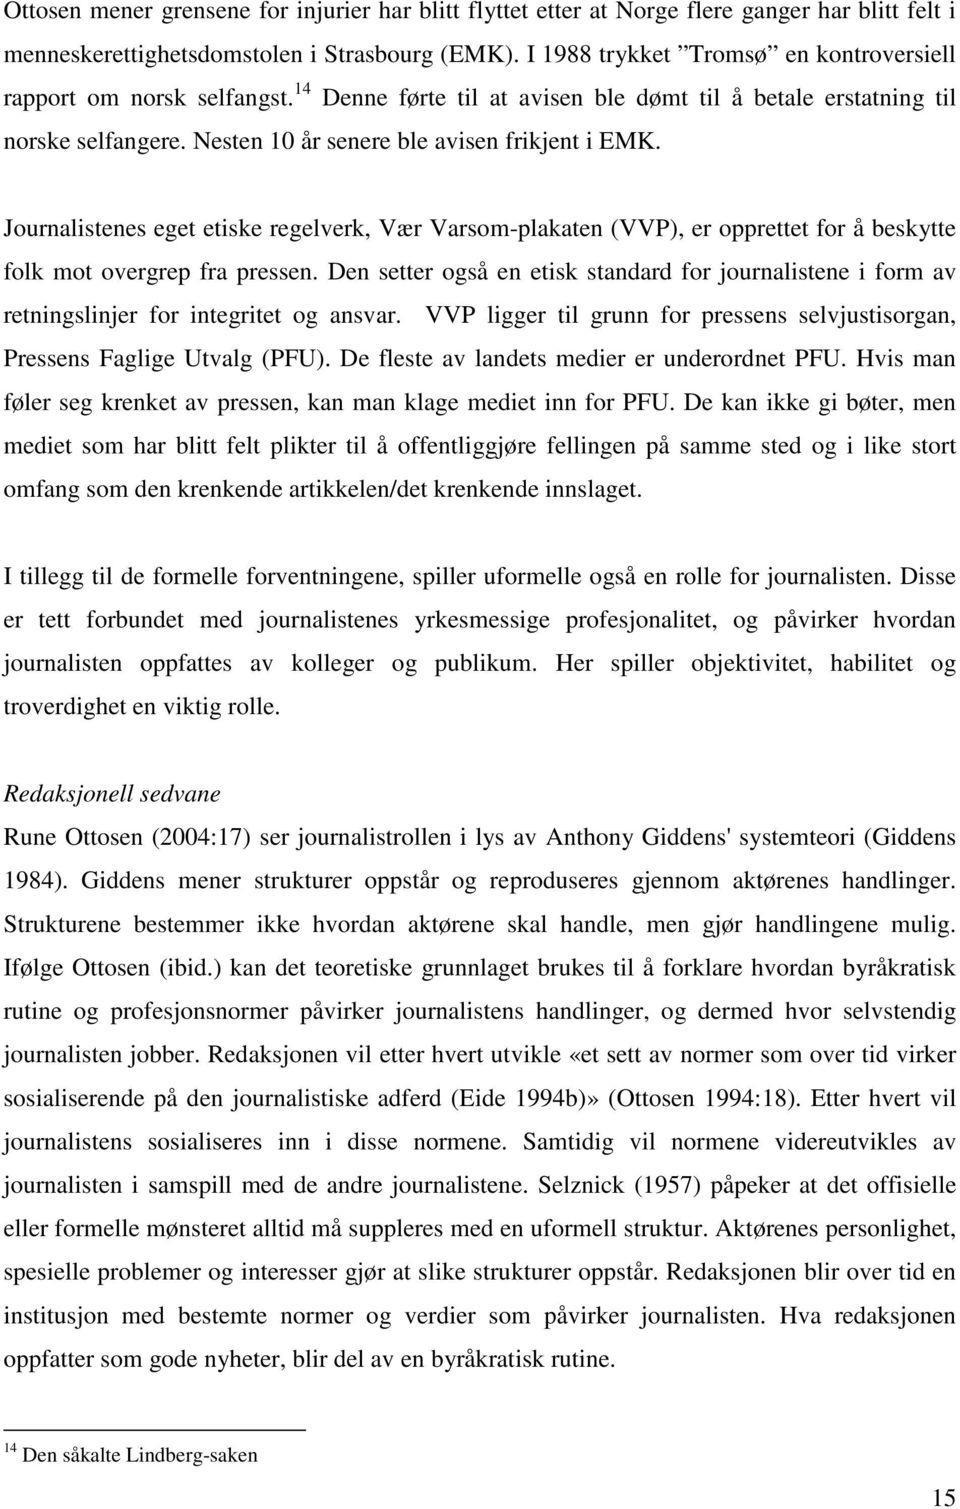 Journalistenes eget etiske regelverk, Vær Varsom-plakaten (VVP), er opprettet for å beskytte folk mot overgrep fra pressen.